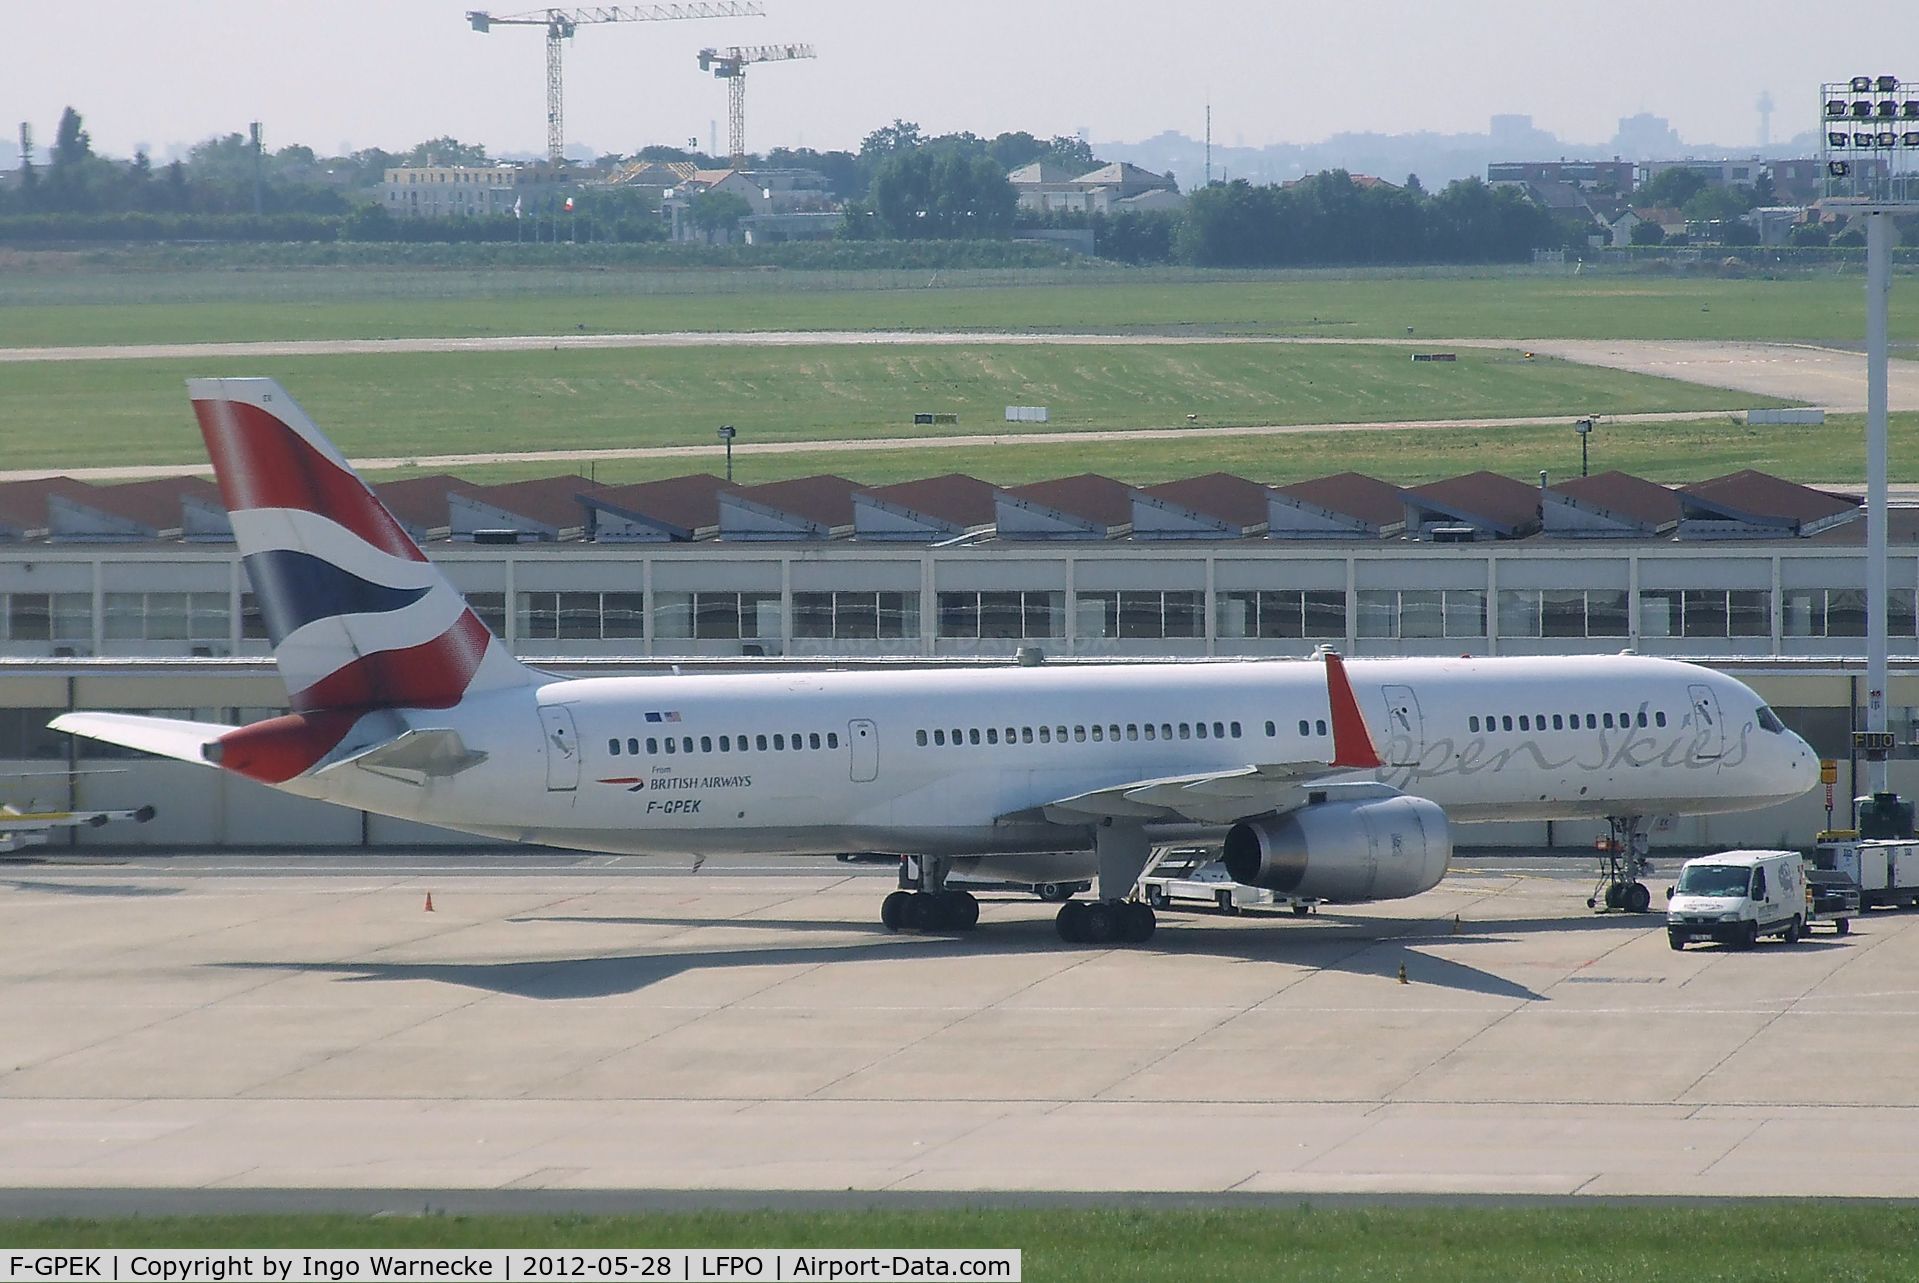 F-GPEK, 1995 Boeing 757-236 C/N 25808, Boeing 757-236 of British Airways open skies at Paris-Orly airport